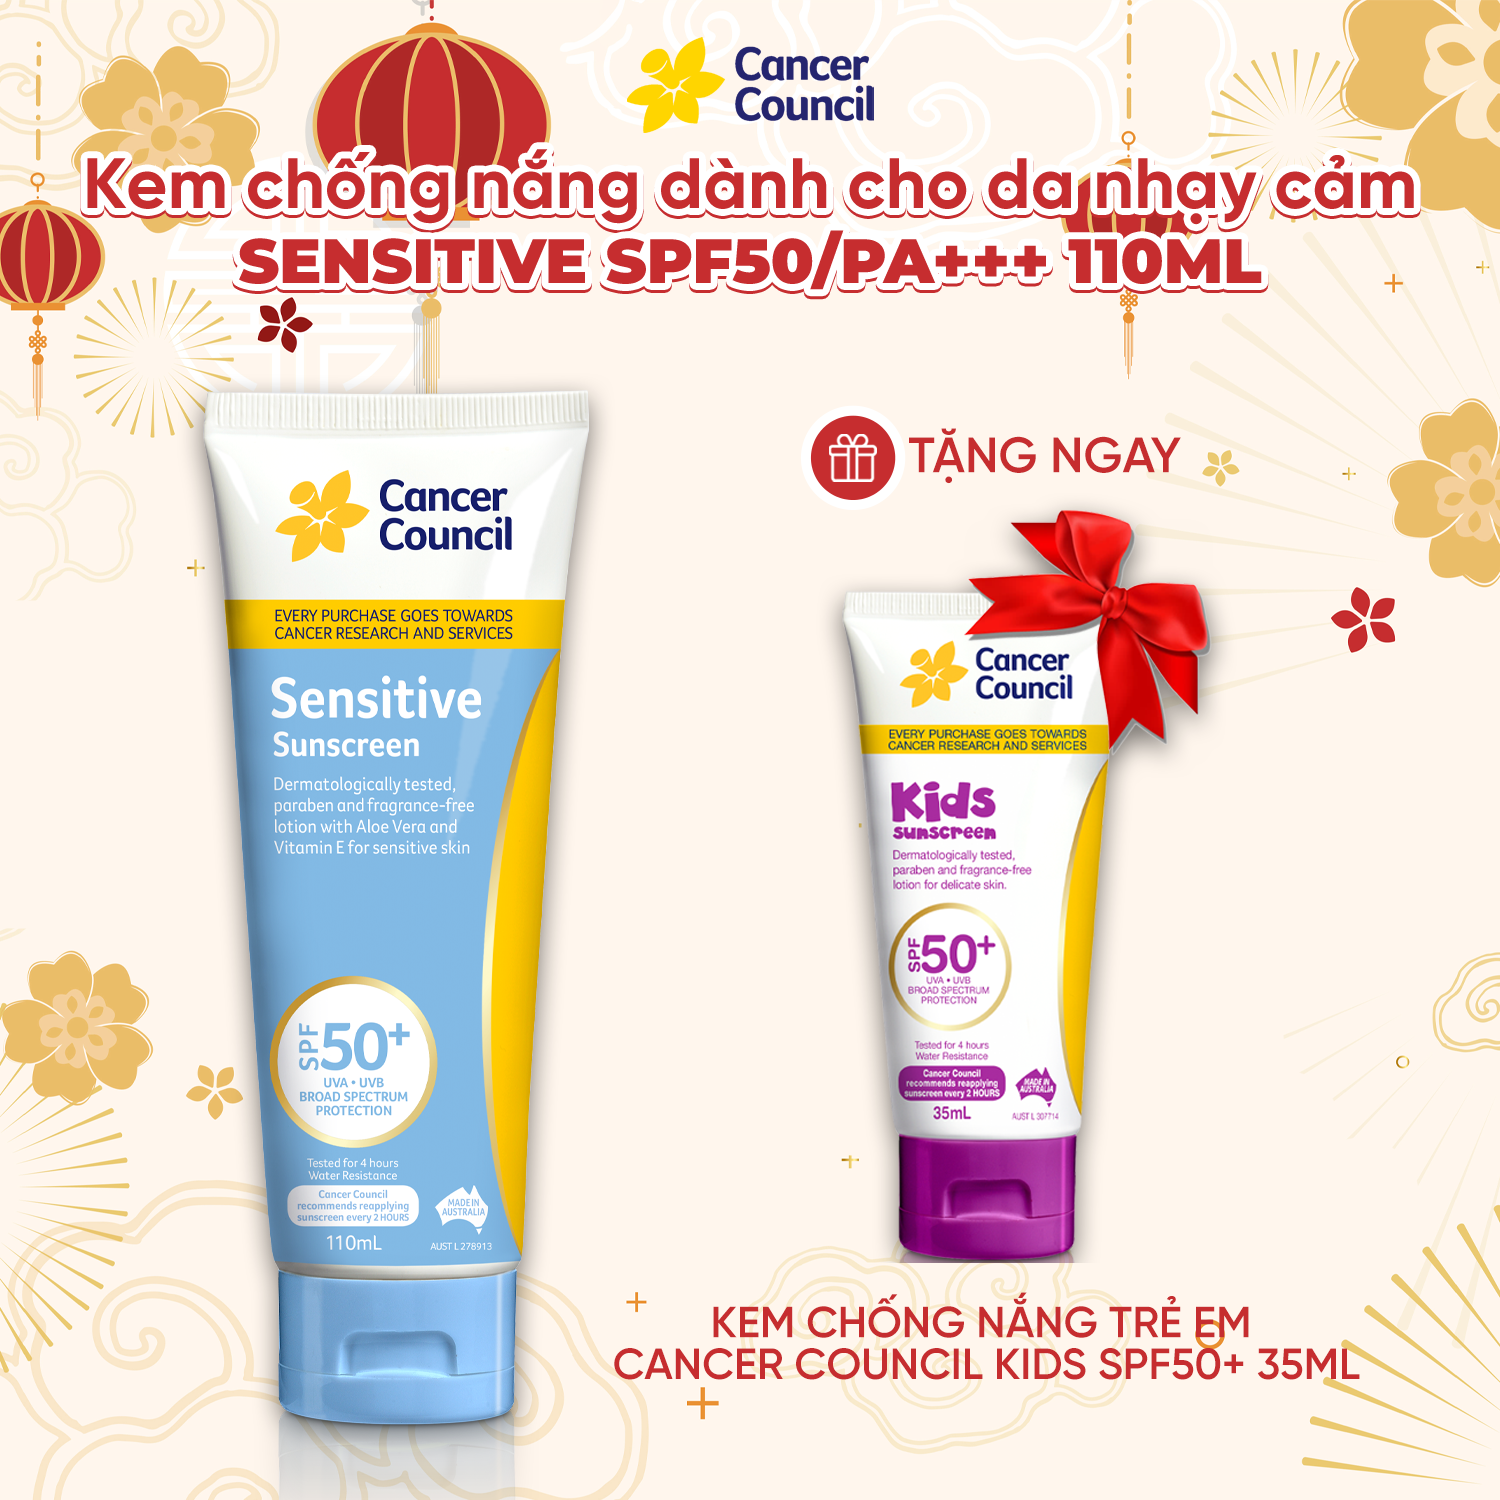 Kem chống nắng cho da nhạy cảm Cancer Council Sensitive SPF 50+/PA++++ 110ml